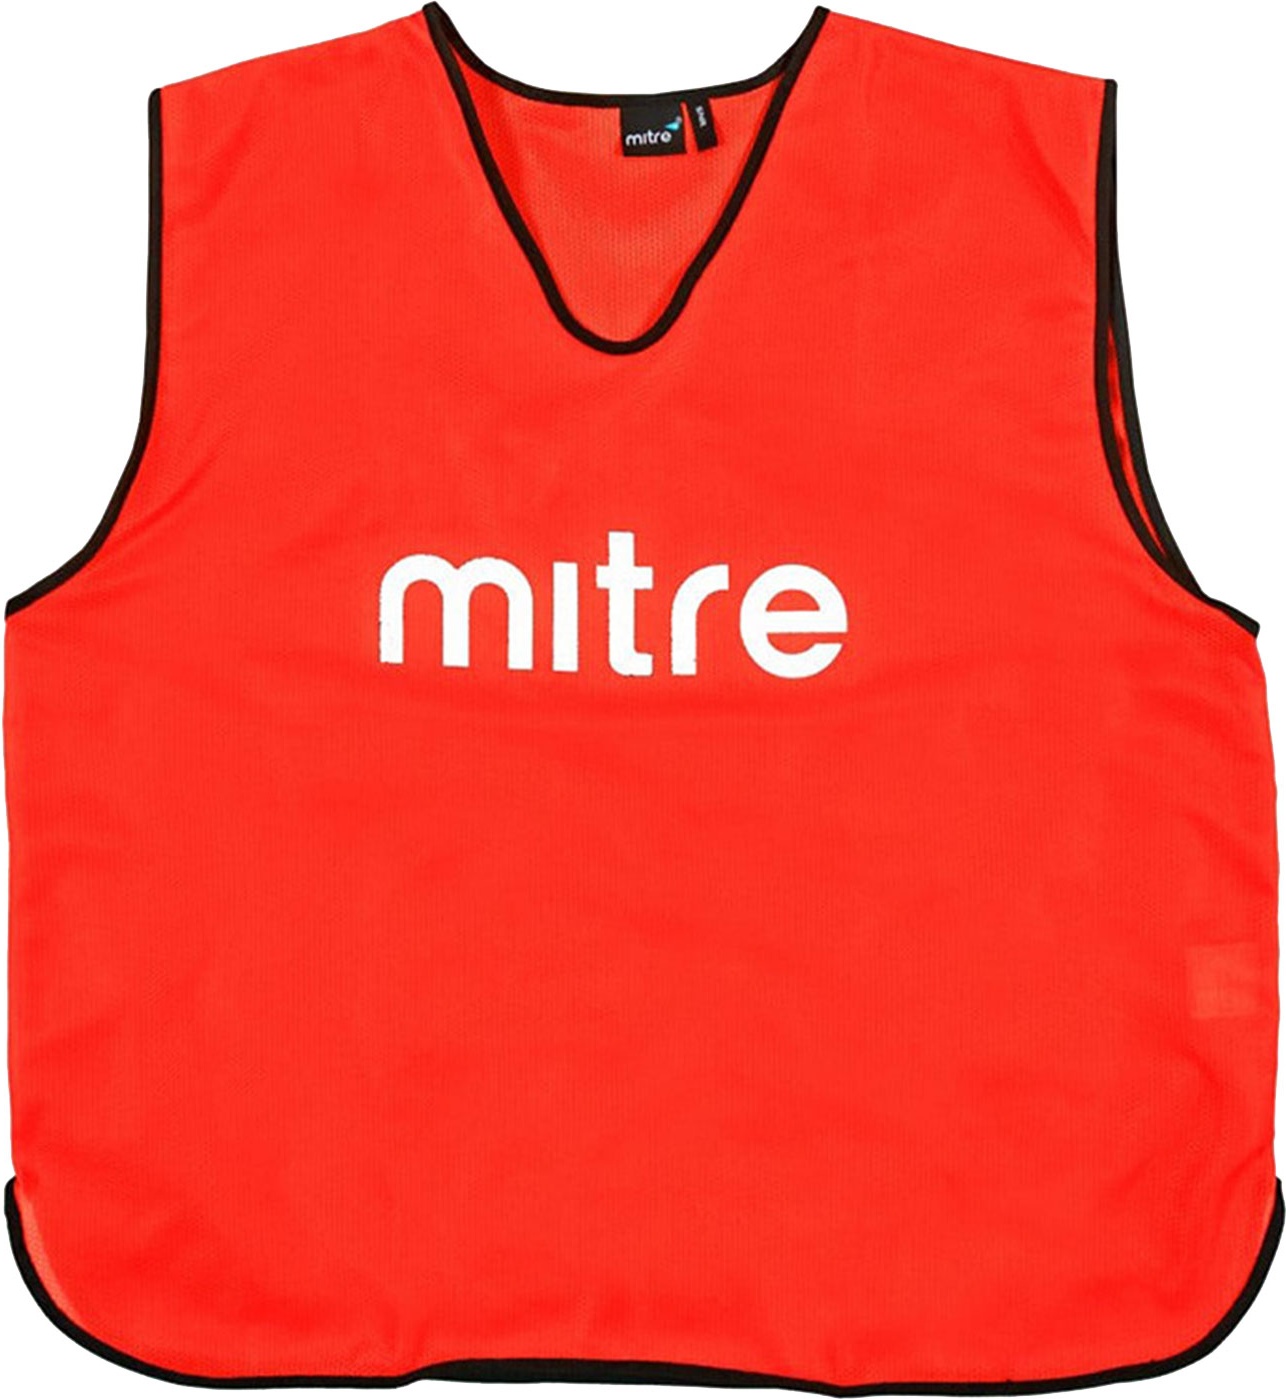 Манишка тренировочная Mitre арт.T21503RE1-SR р.SR (Объем груди 122см), полиэстер, красный